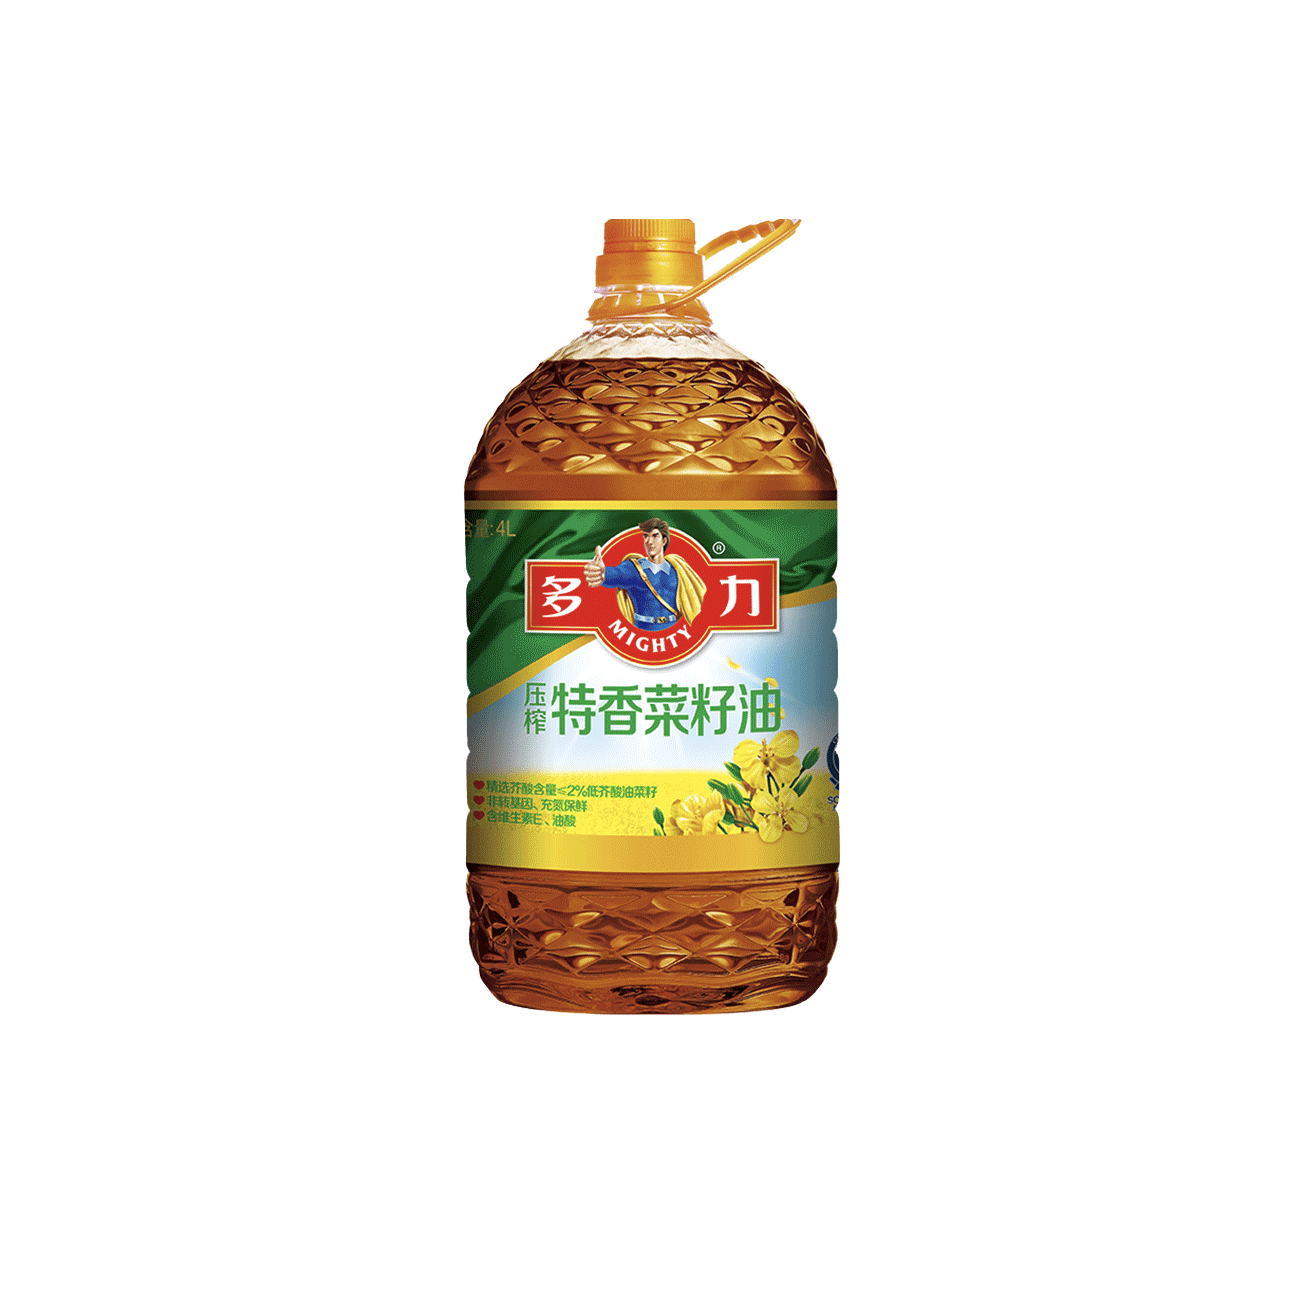 88VIP：MIGHTY 多力 压榨特香榨菜籽油4L四川健康家用桶装农家非转基因食用油 